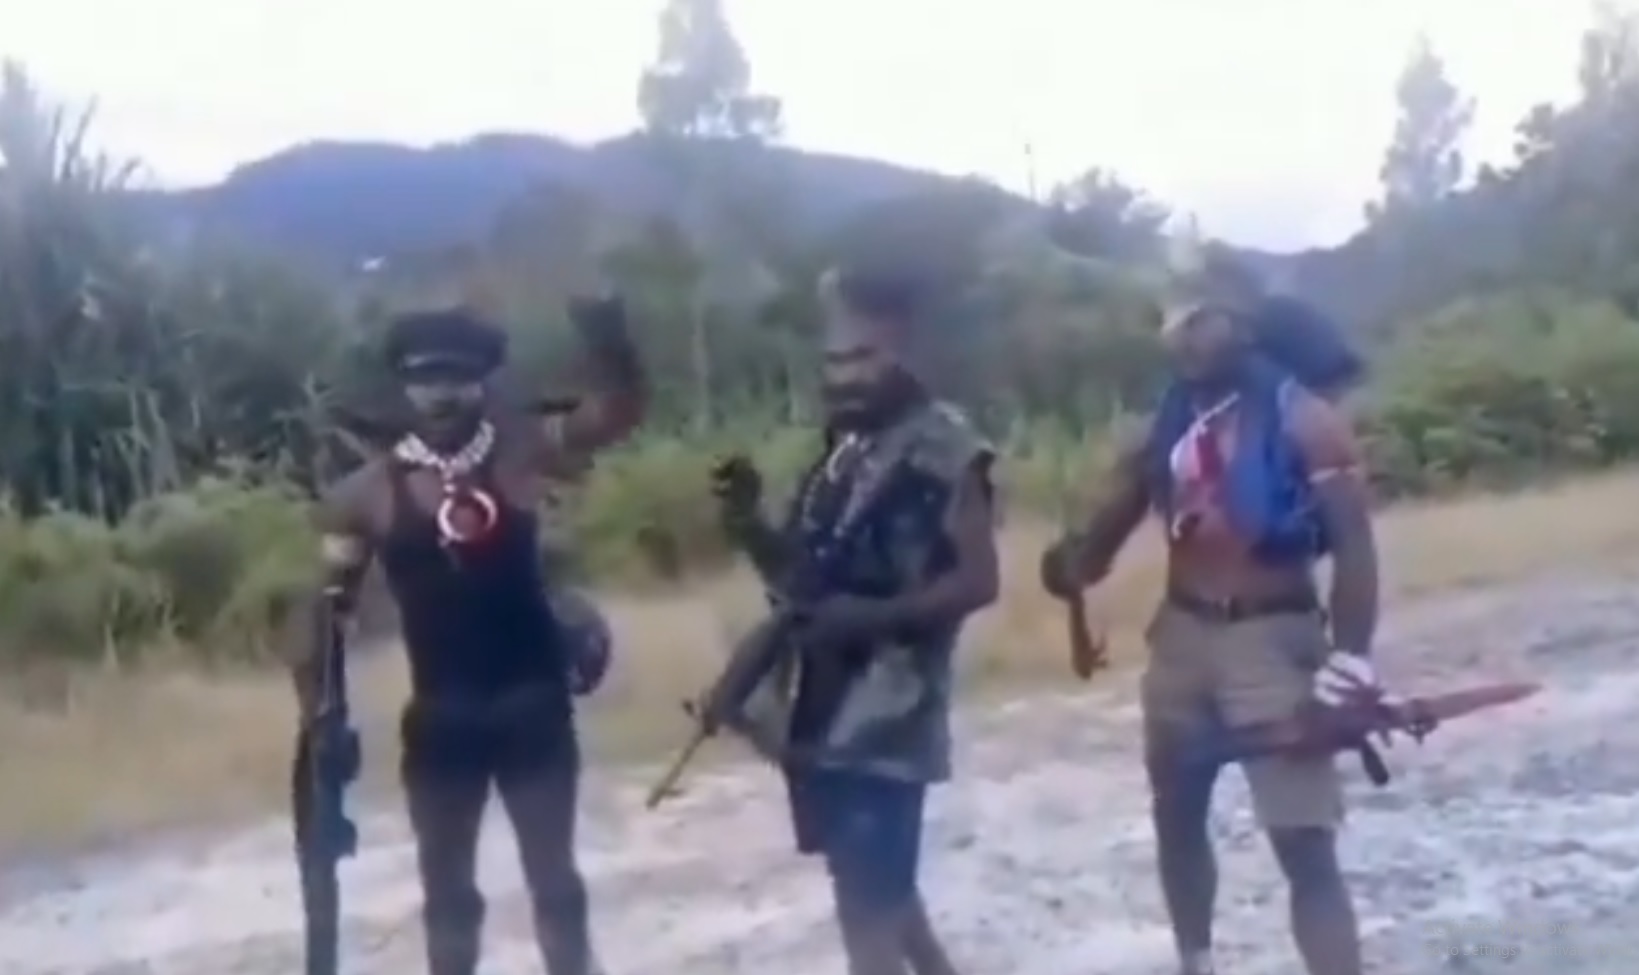 Danramil Aradide Papua Ditemukan Tewas dengan Luka Tembak, Kependam: Pelakunya OPM Paniai Pimpinan Matias Gobay